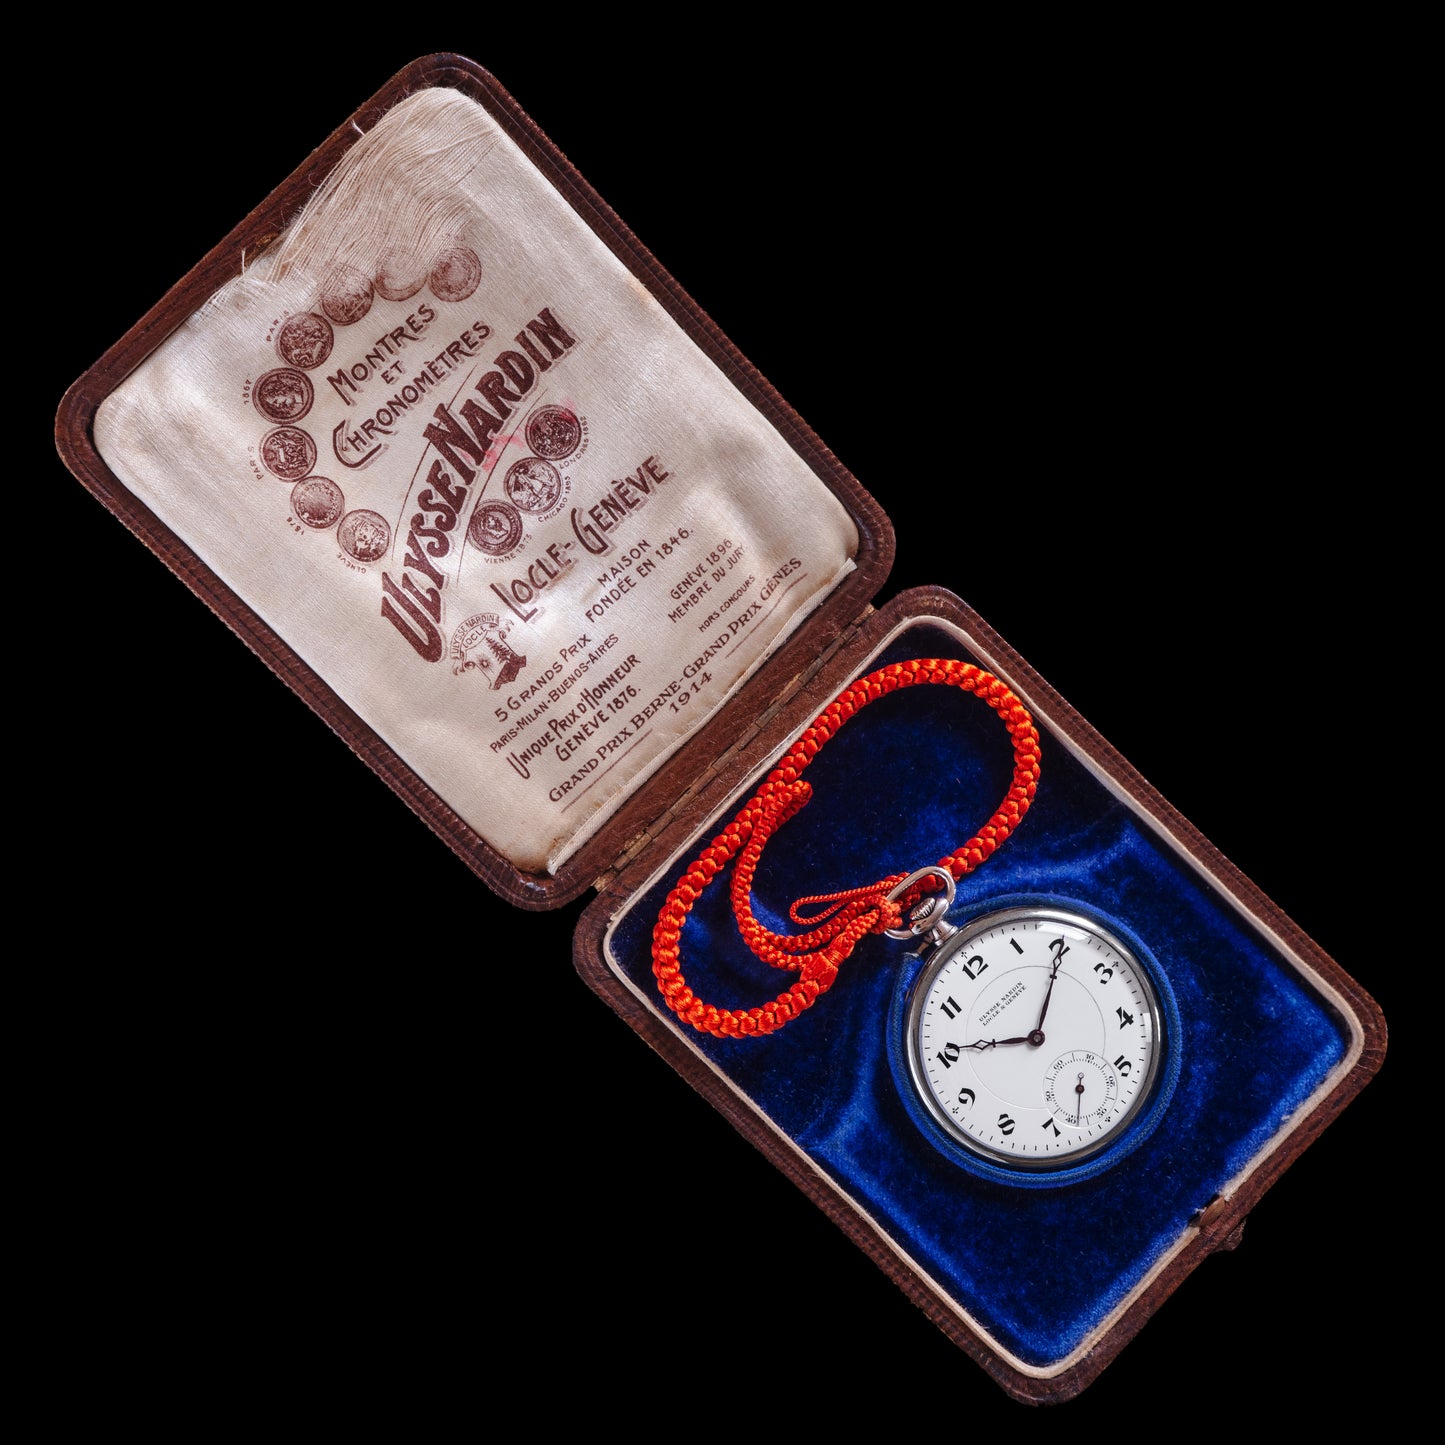 No. 442 / Ulysse Nardin Pocket Watch with Box - 1930s